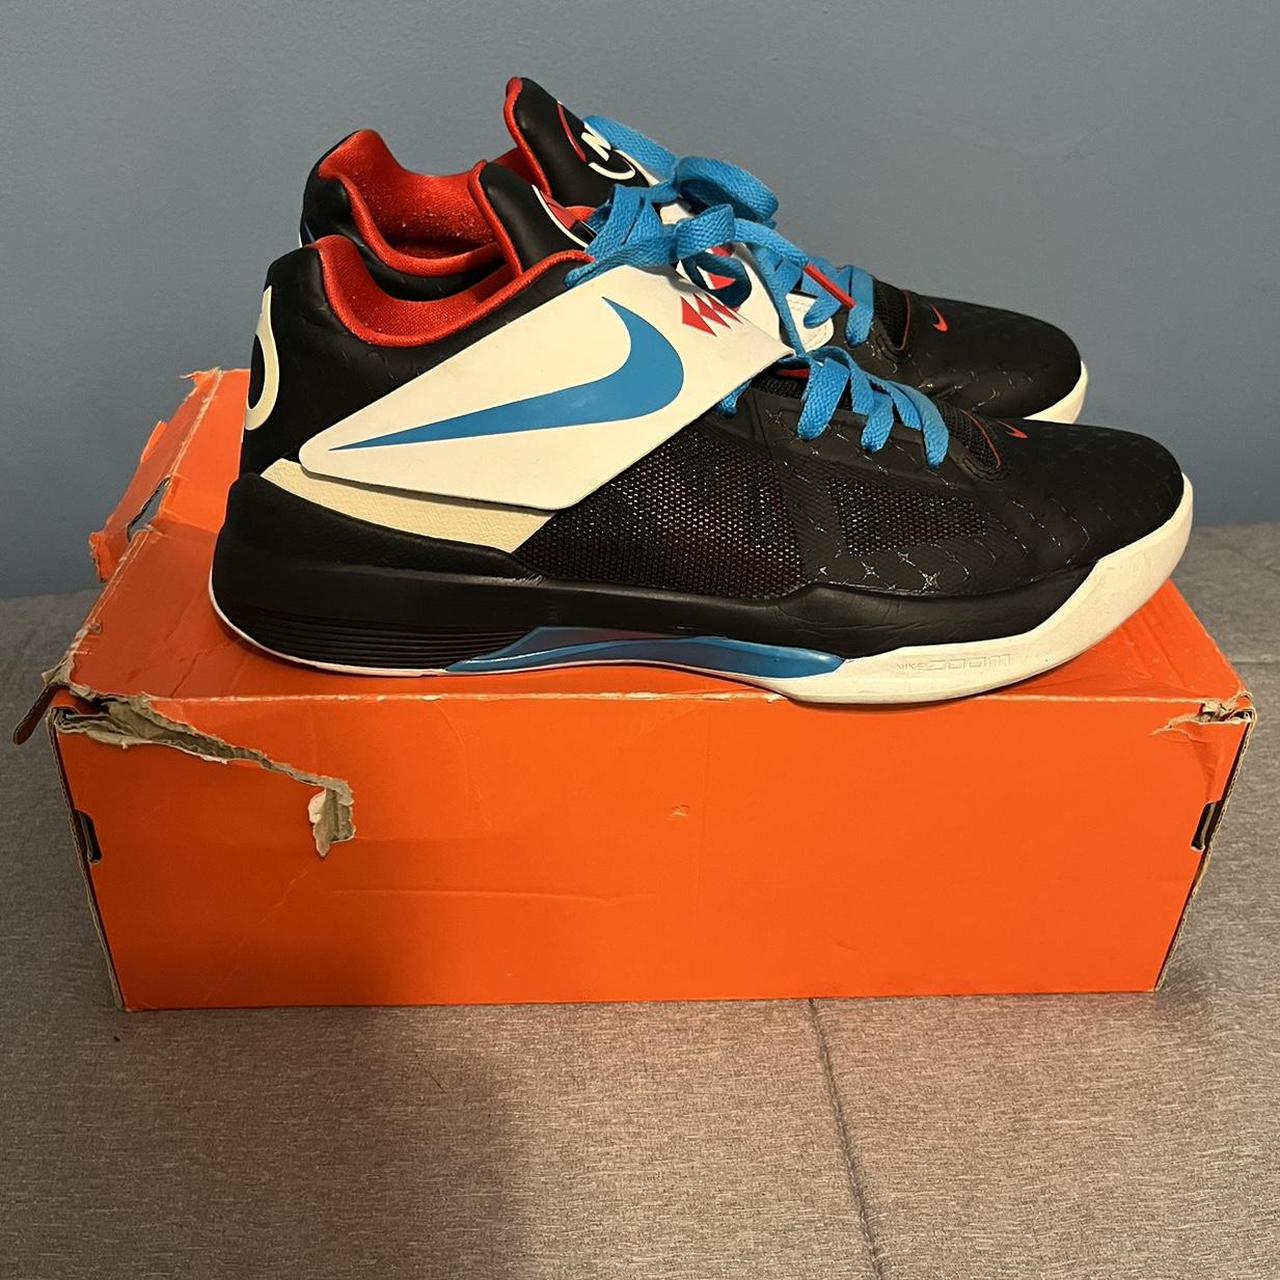 Nike Zoom KD 4 IV black N7 519567 046. A pair of...